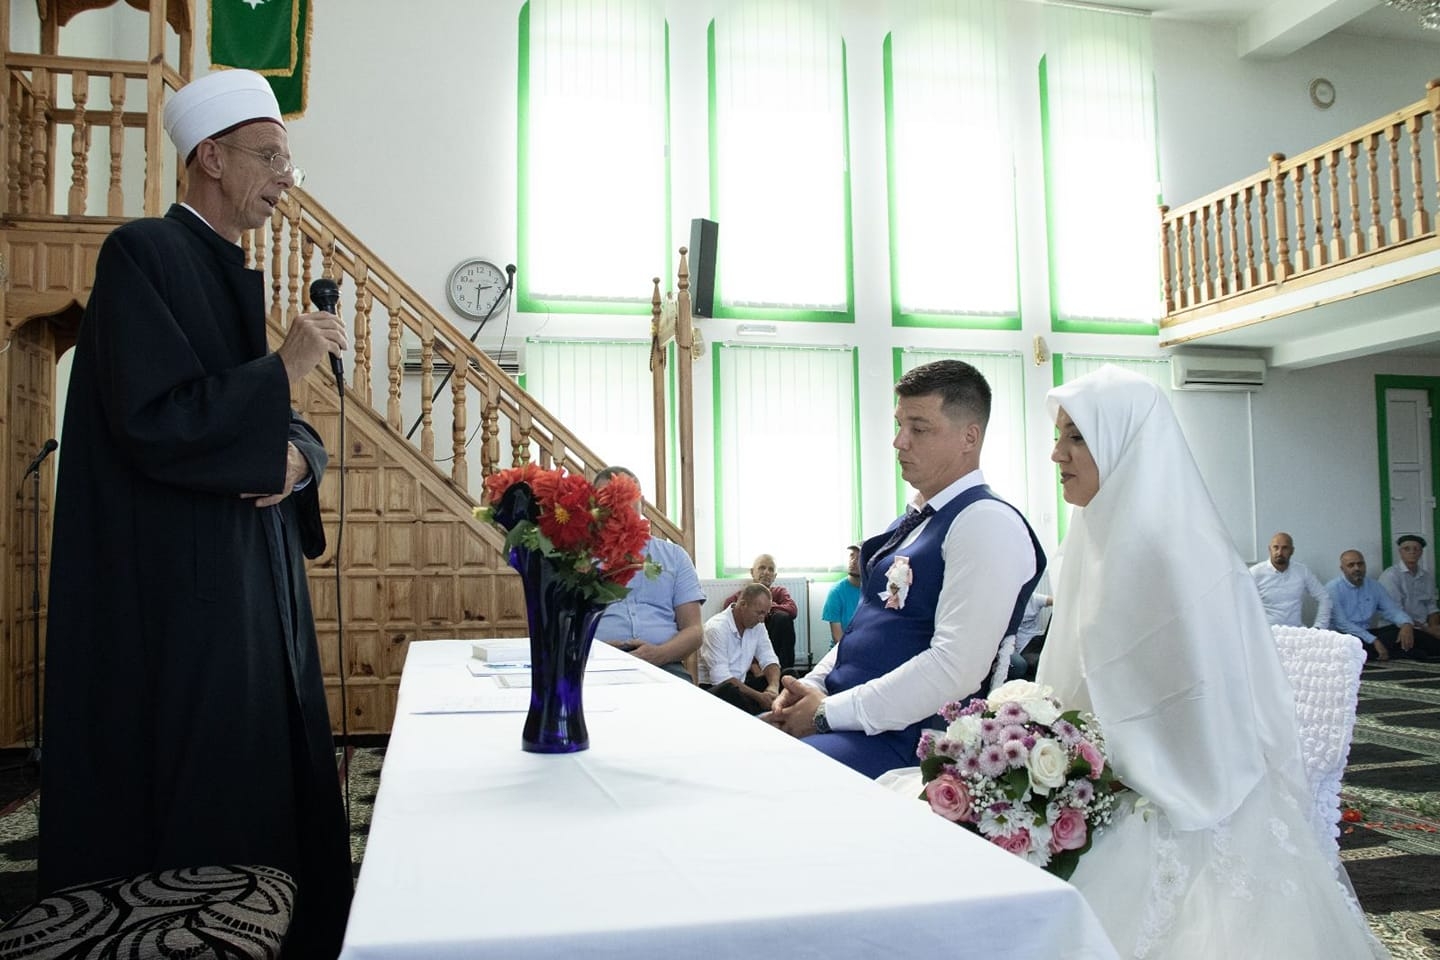 Vjenčanje – Sabahudin Efendić i Ćerima Ahmić